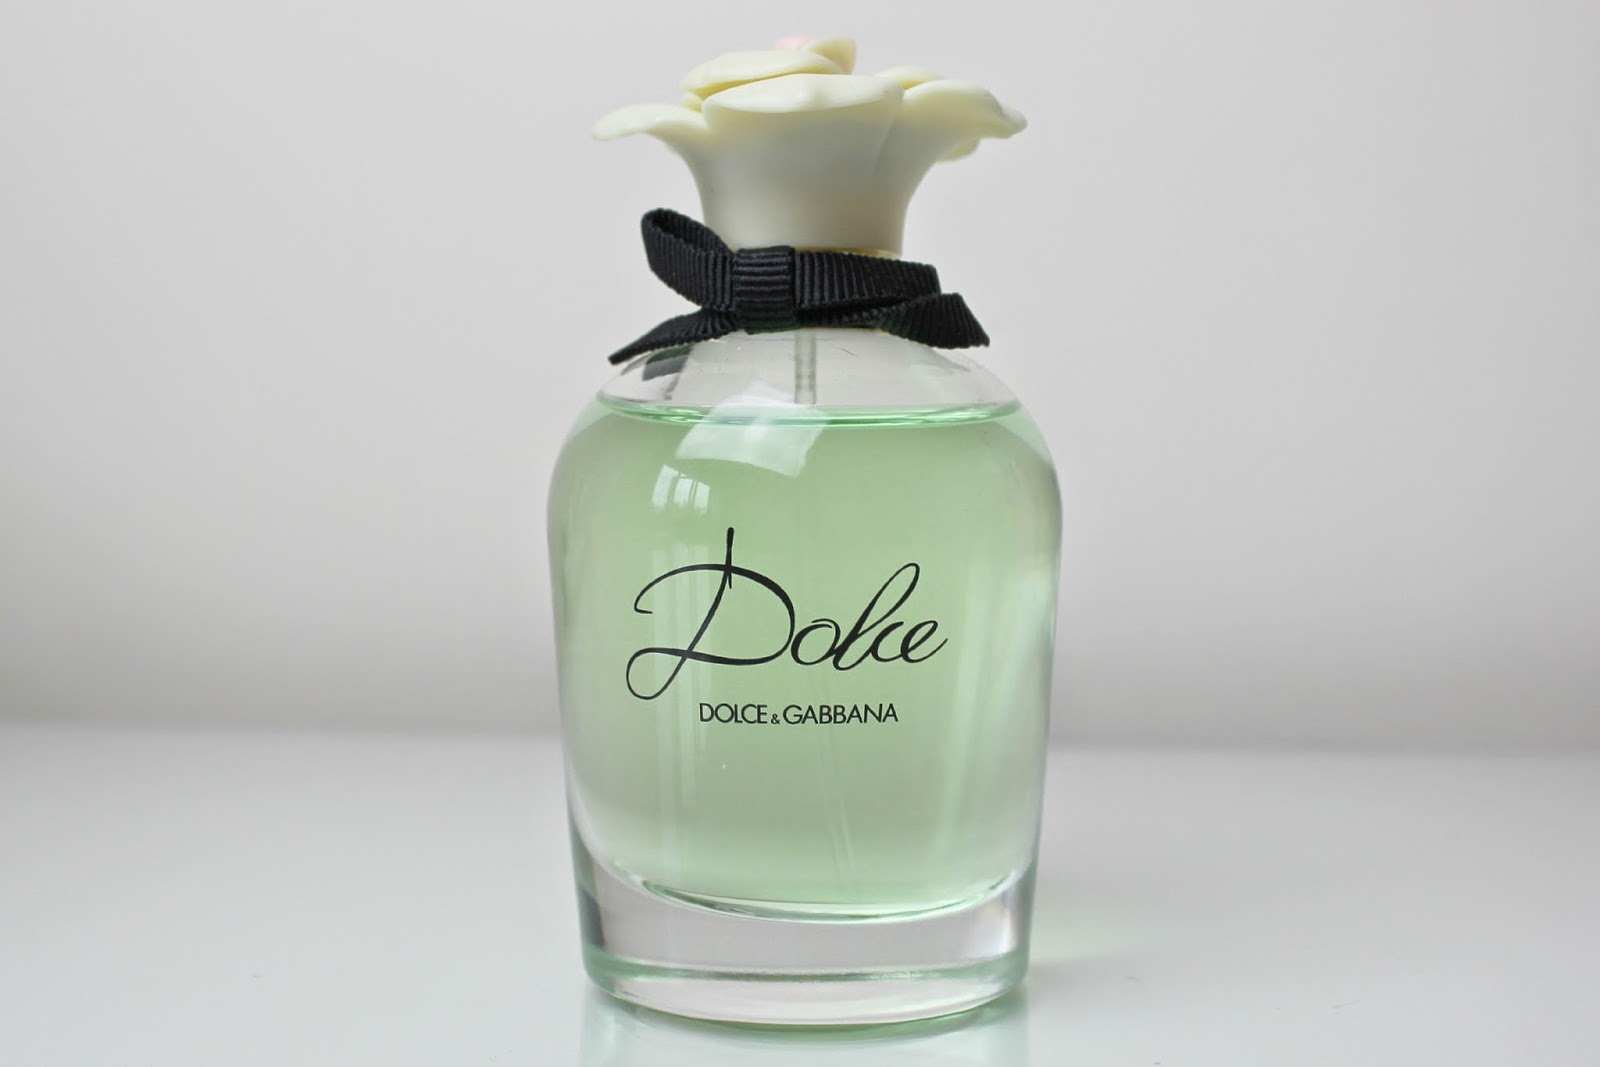 A picture of Dolce by Dolce & Gabbana Eau de Parfum Spray